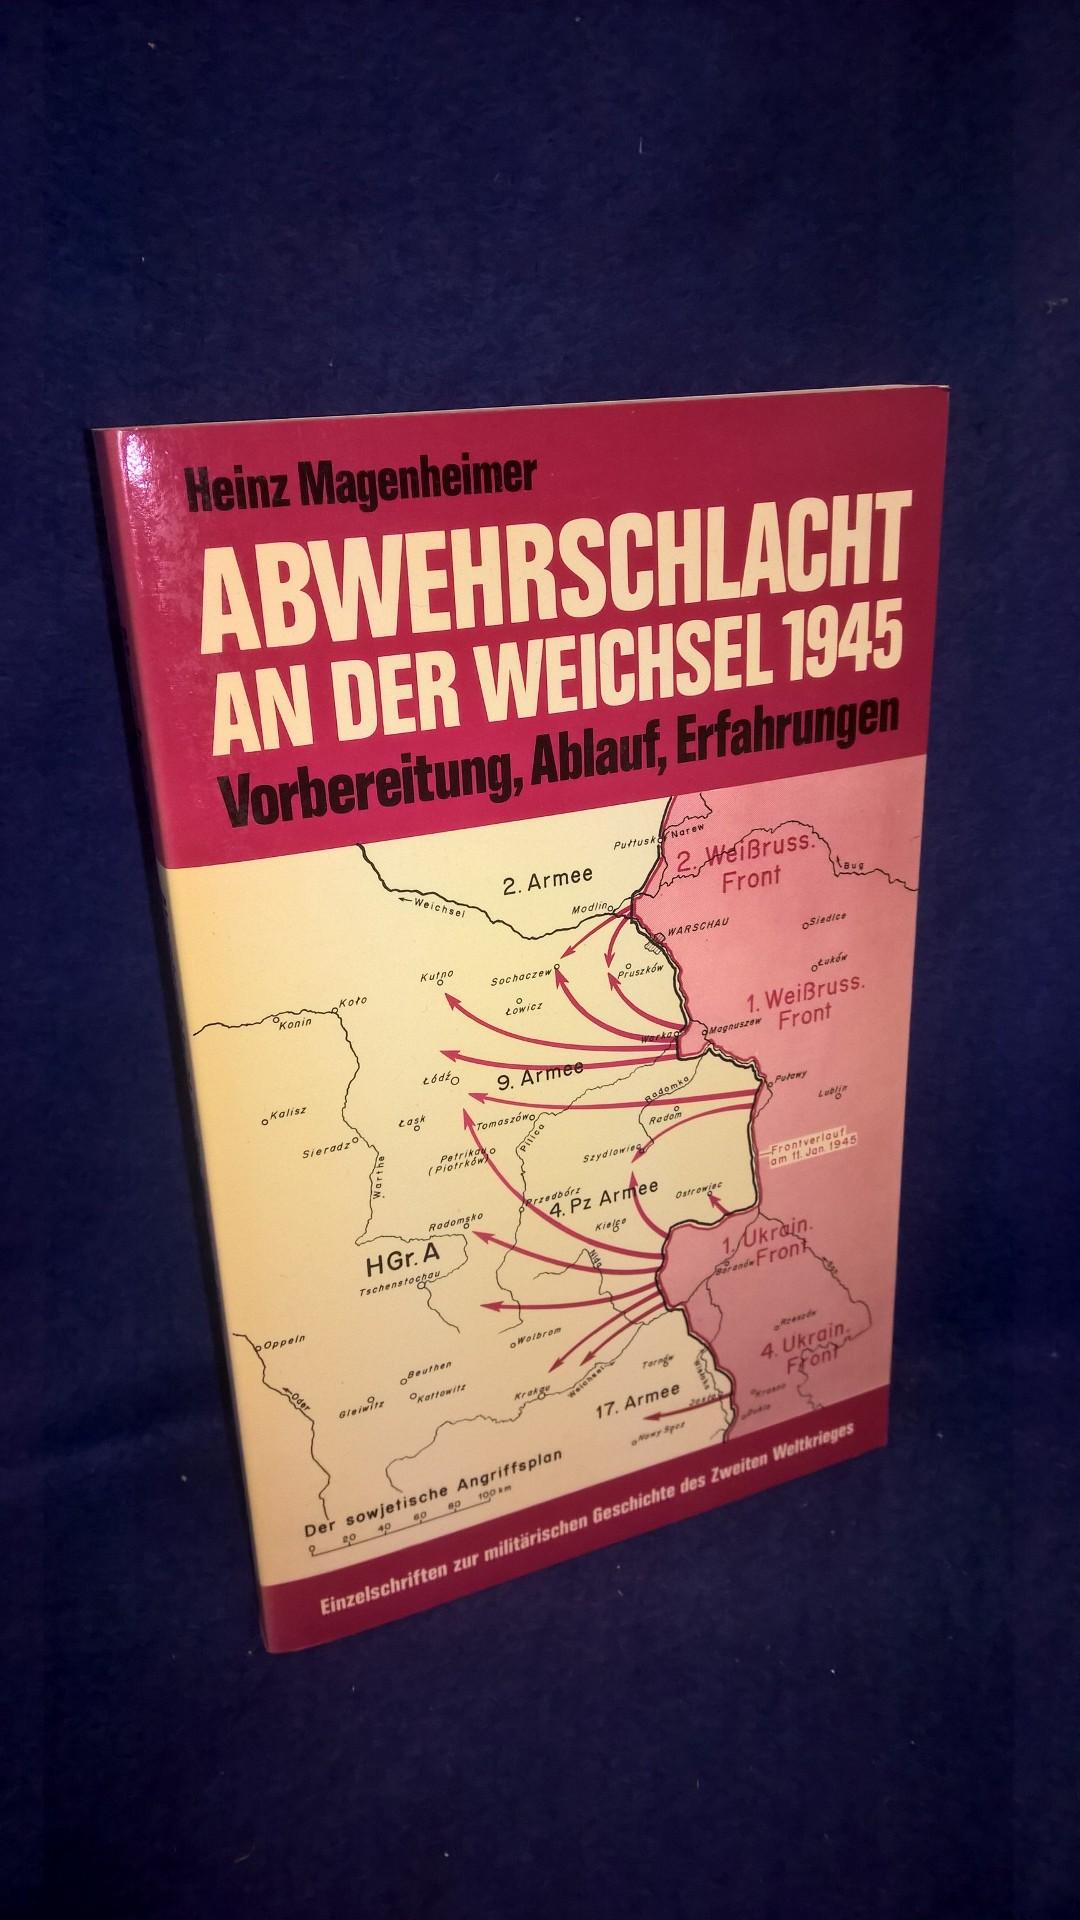 Einzelschriften zur militärischen Geschichte  des 2.Weltkrieges, Band 20: Abwehrschlacht an der Weichsel 1945. Vorbereitung, Ablauf, Erfahrungen 